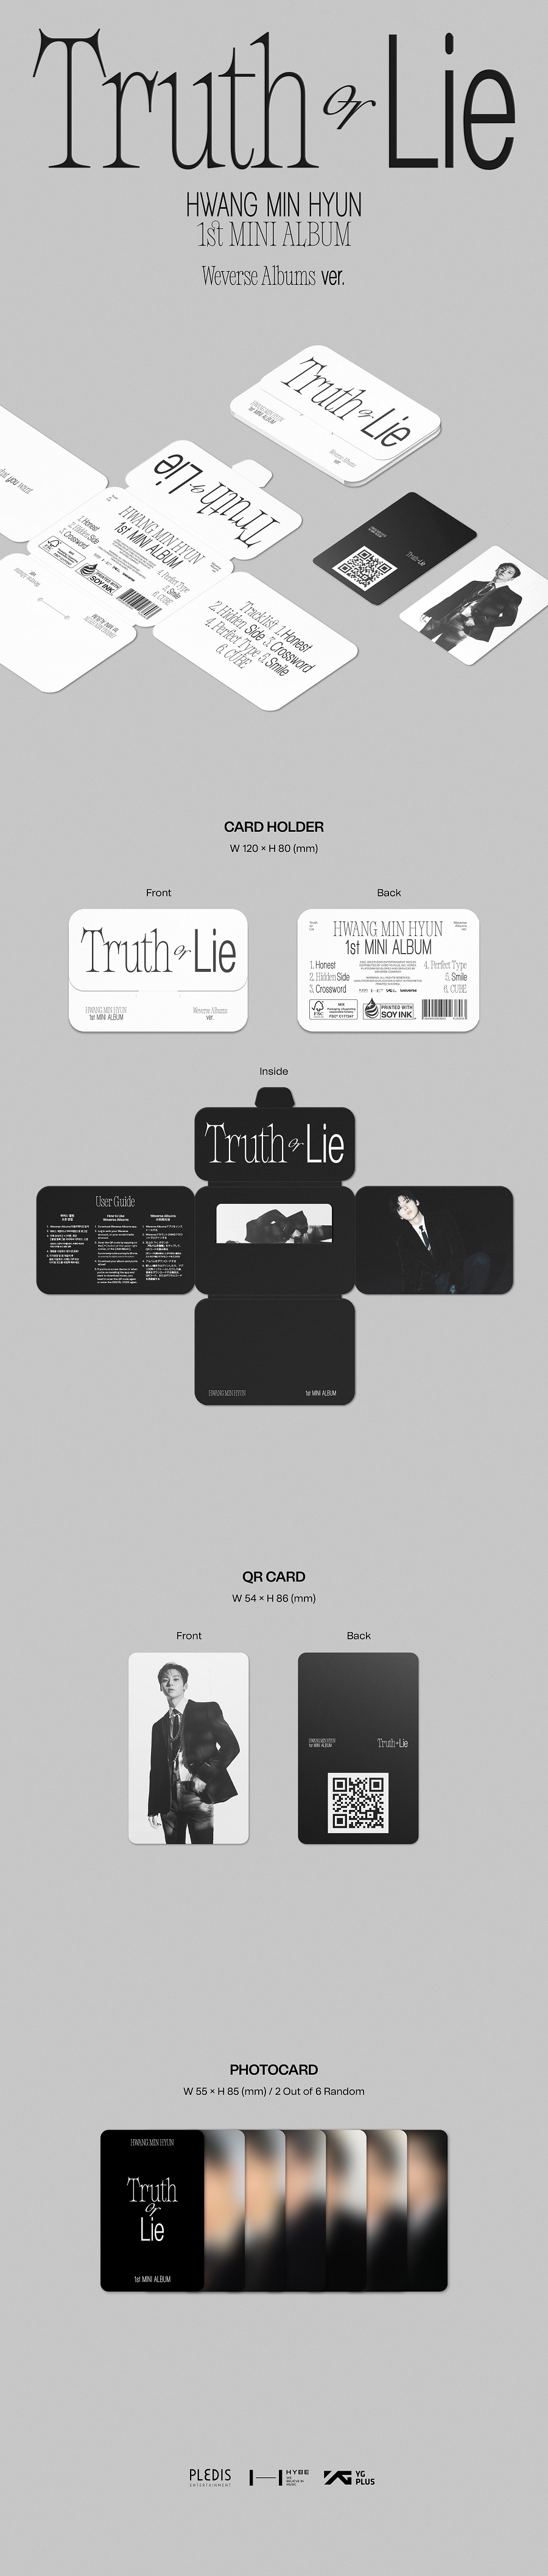 황민현(HWANG MIN HYUN) - 'Truth or Lie' - 1st MINI ALBUM (Weverse Albums ver.)